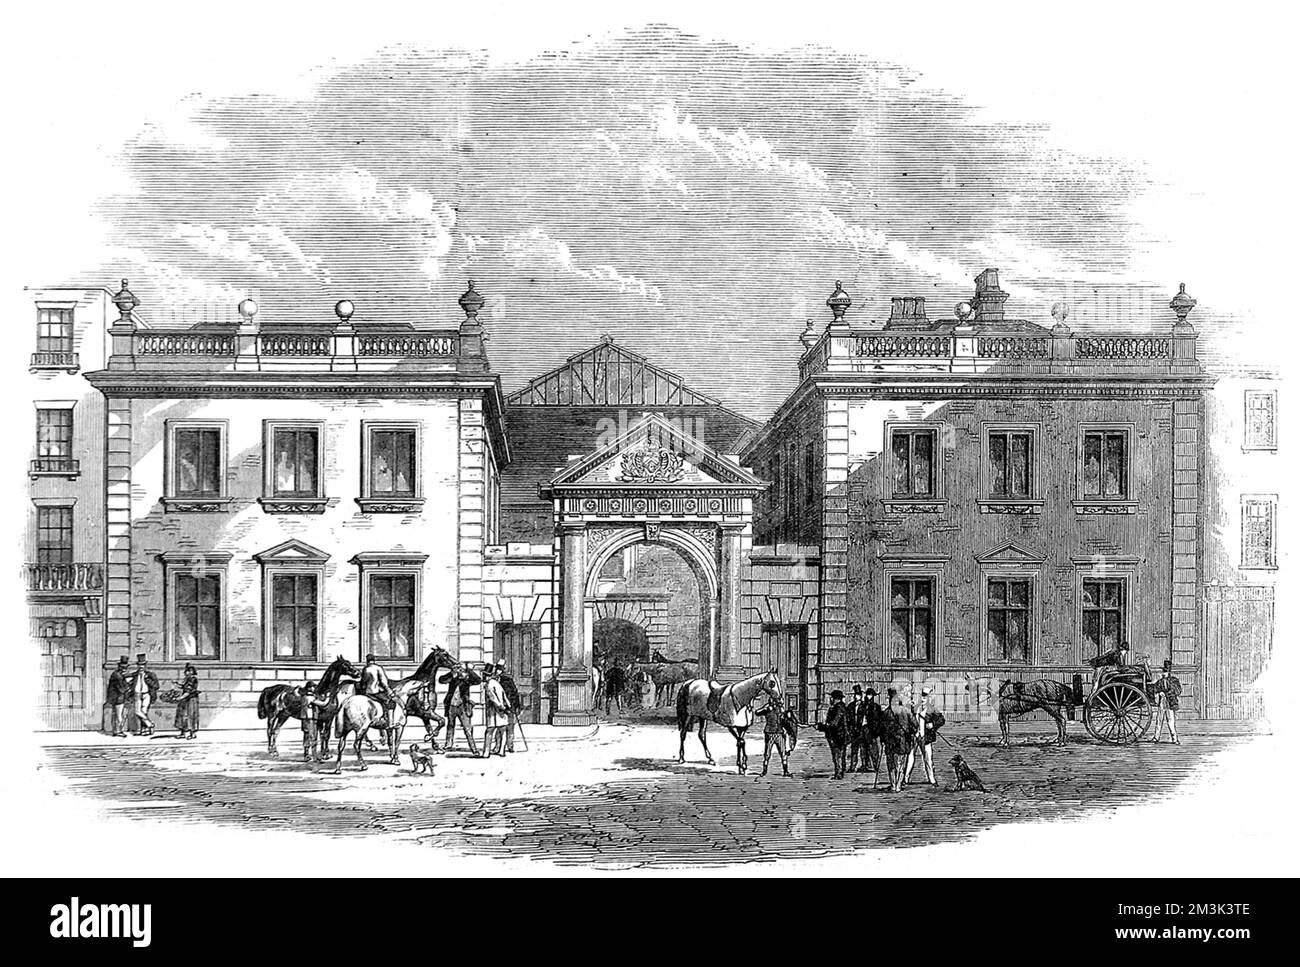 L'extérieur du marché du cheval et des calèches de Tattersall, Knightsbridge, 1864. 6 août 1864 Banque D'Images